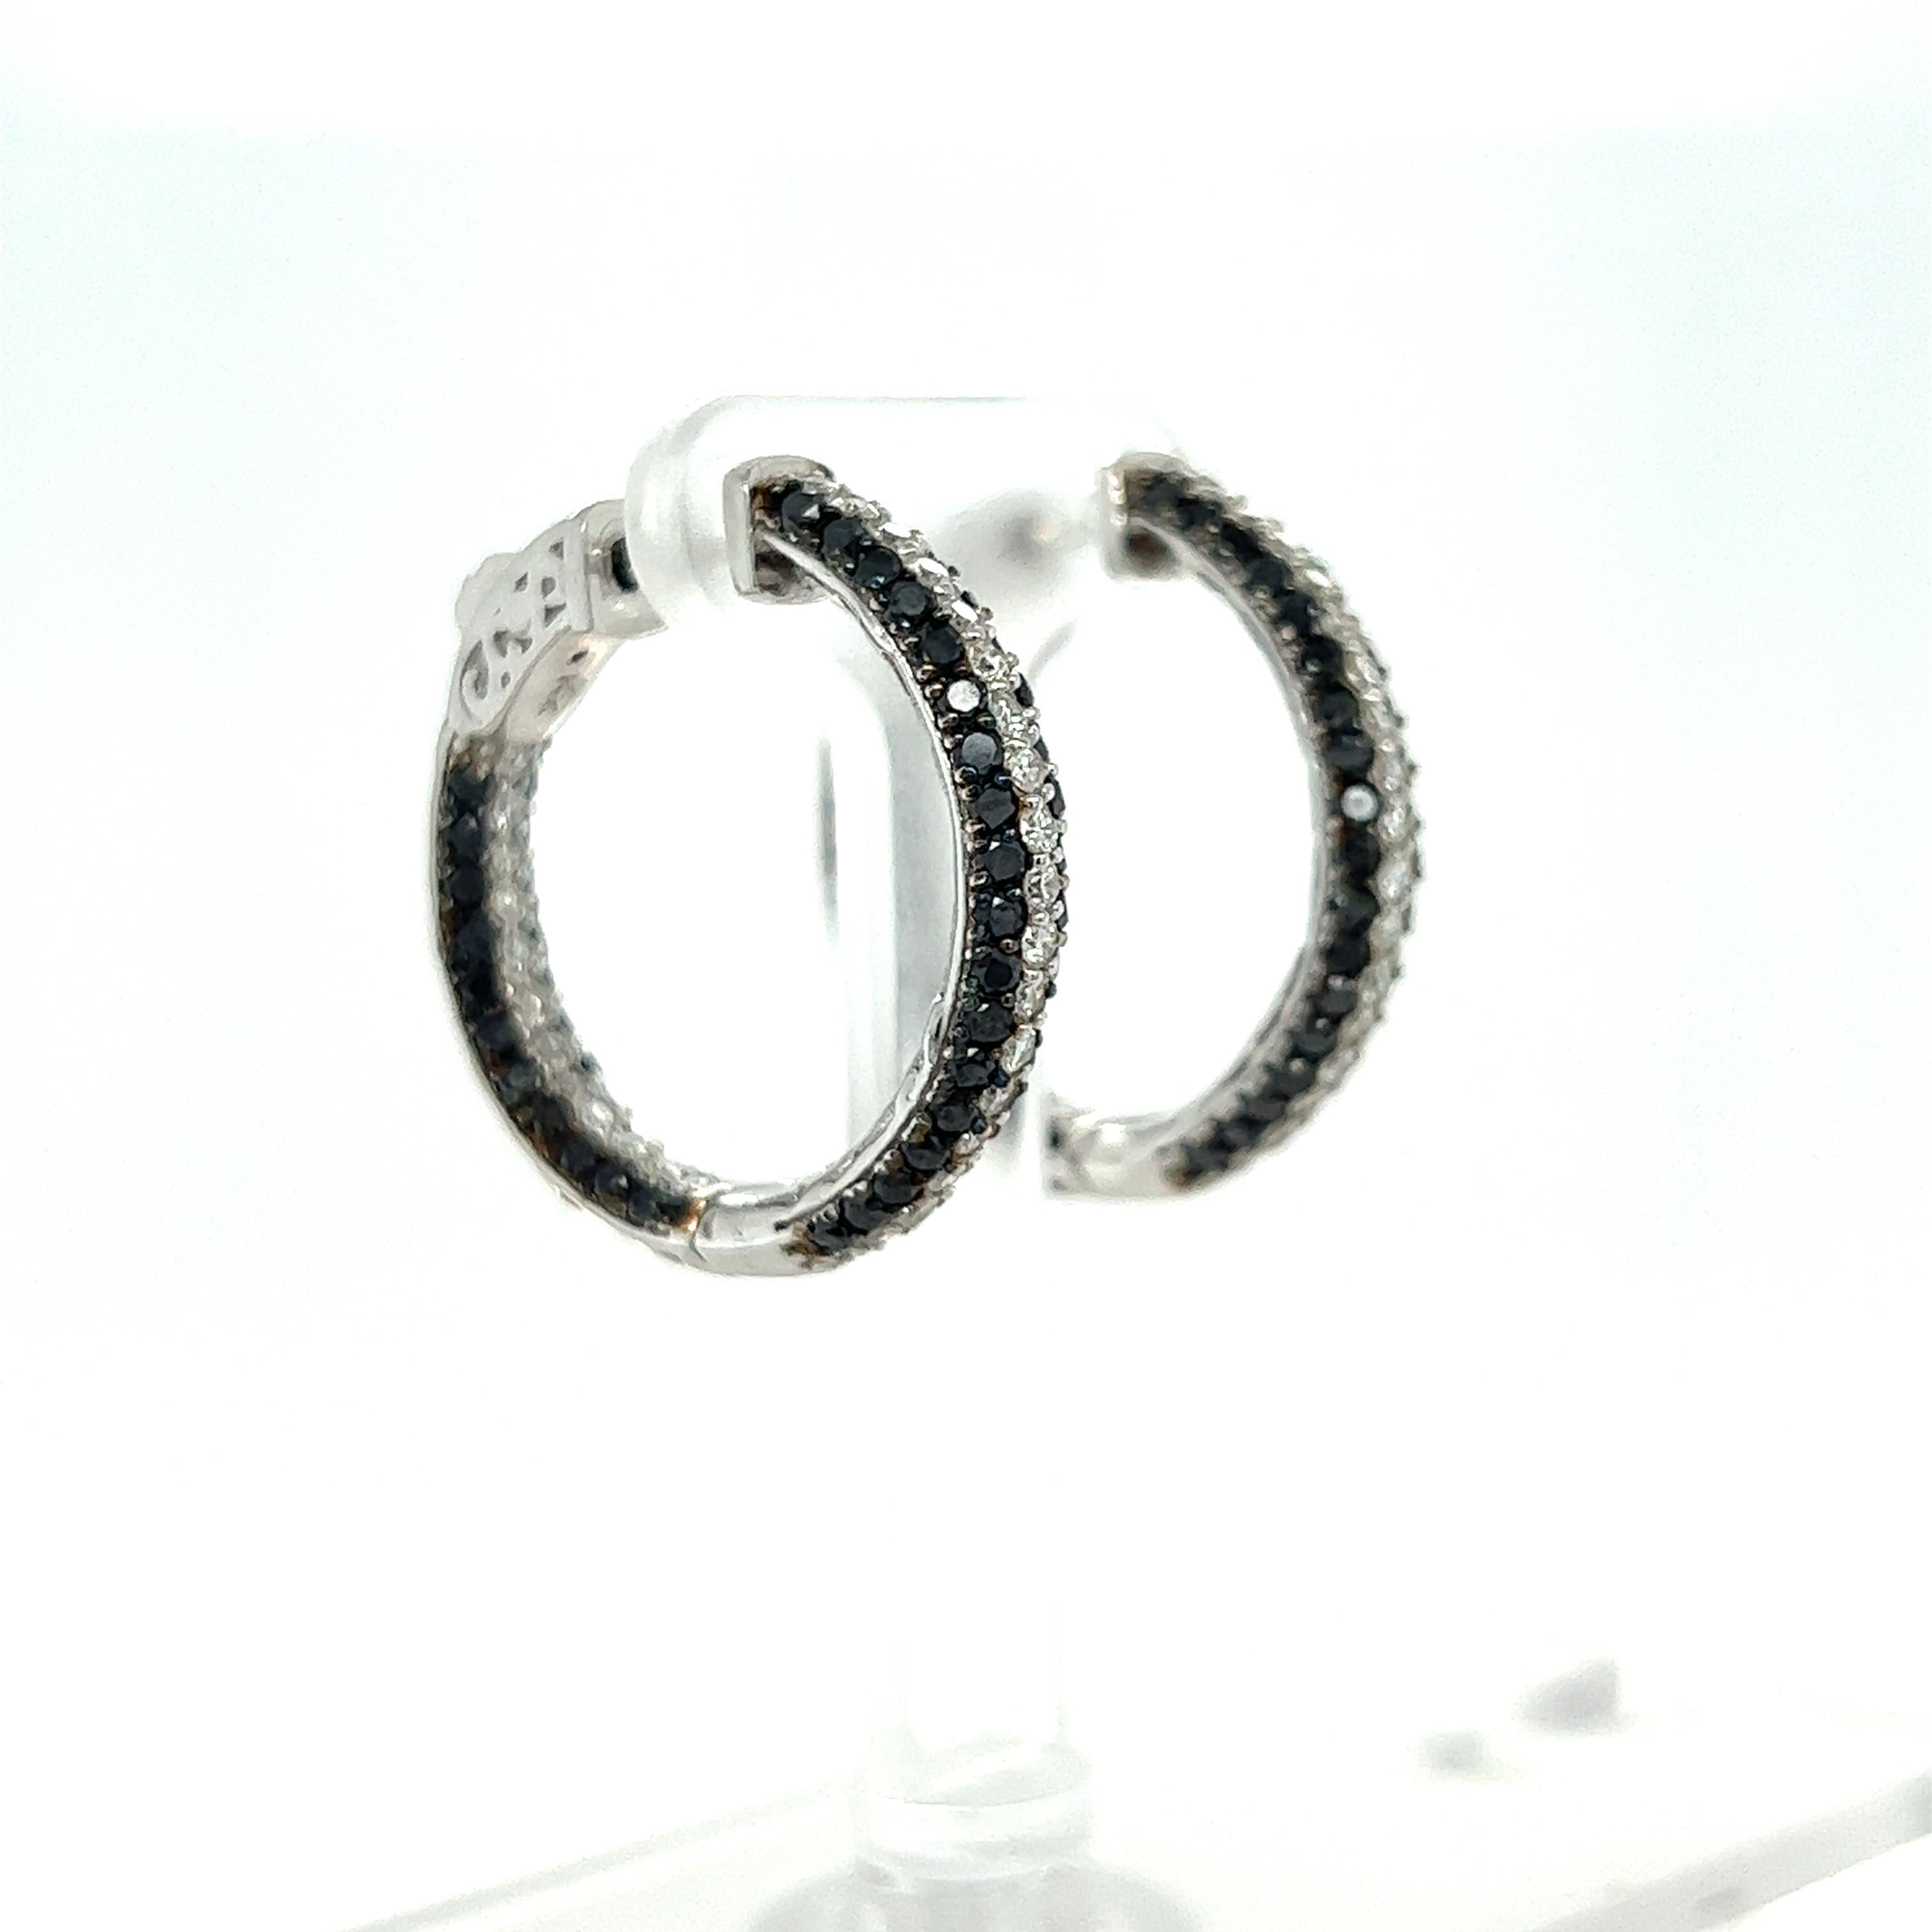 Diese Ohrringe haben schwarze Diamanten im Rundschliff mit einem Gewicht von 1,89 Karat und weiße Diamanten im Rundschliff mit einem Gewicht von 0,86 Karat. Das Gesamtkaratgewicht der Ohrringe beträgt 2.75 Karat. 

Sie sind aus 14 Karat Weißgold